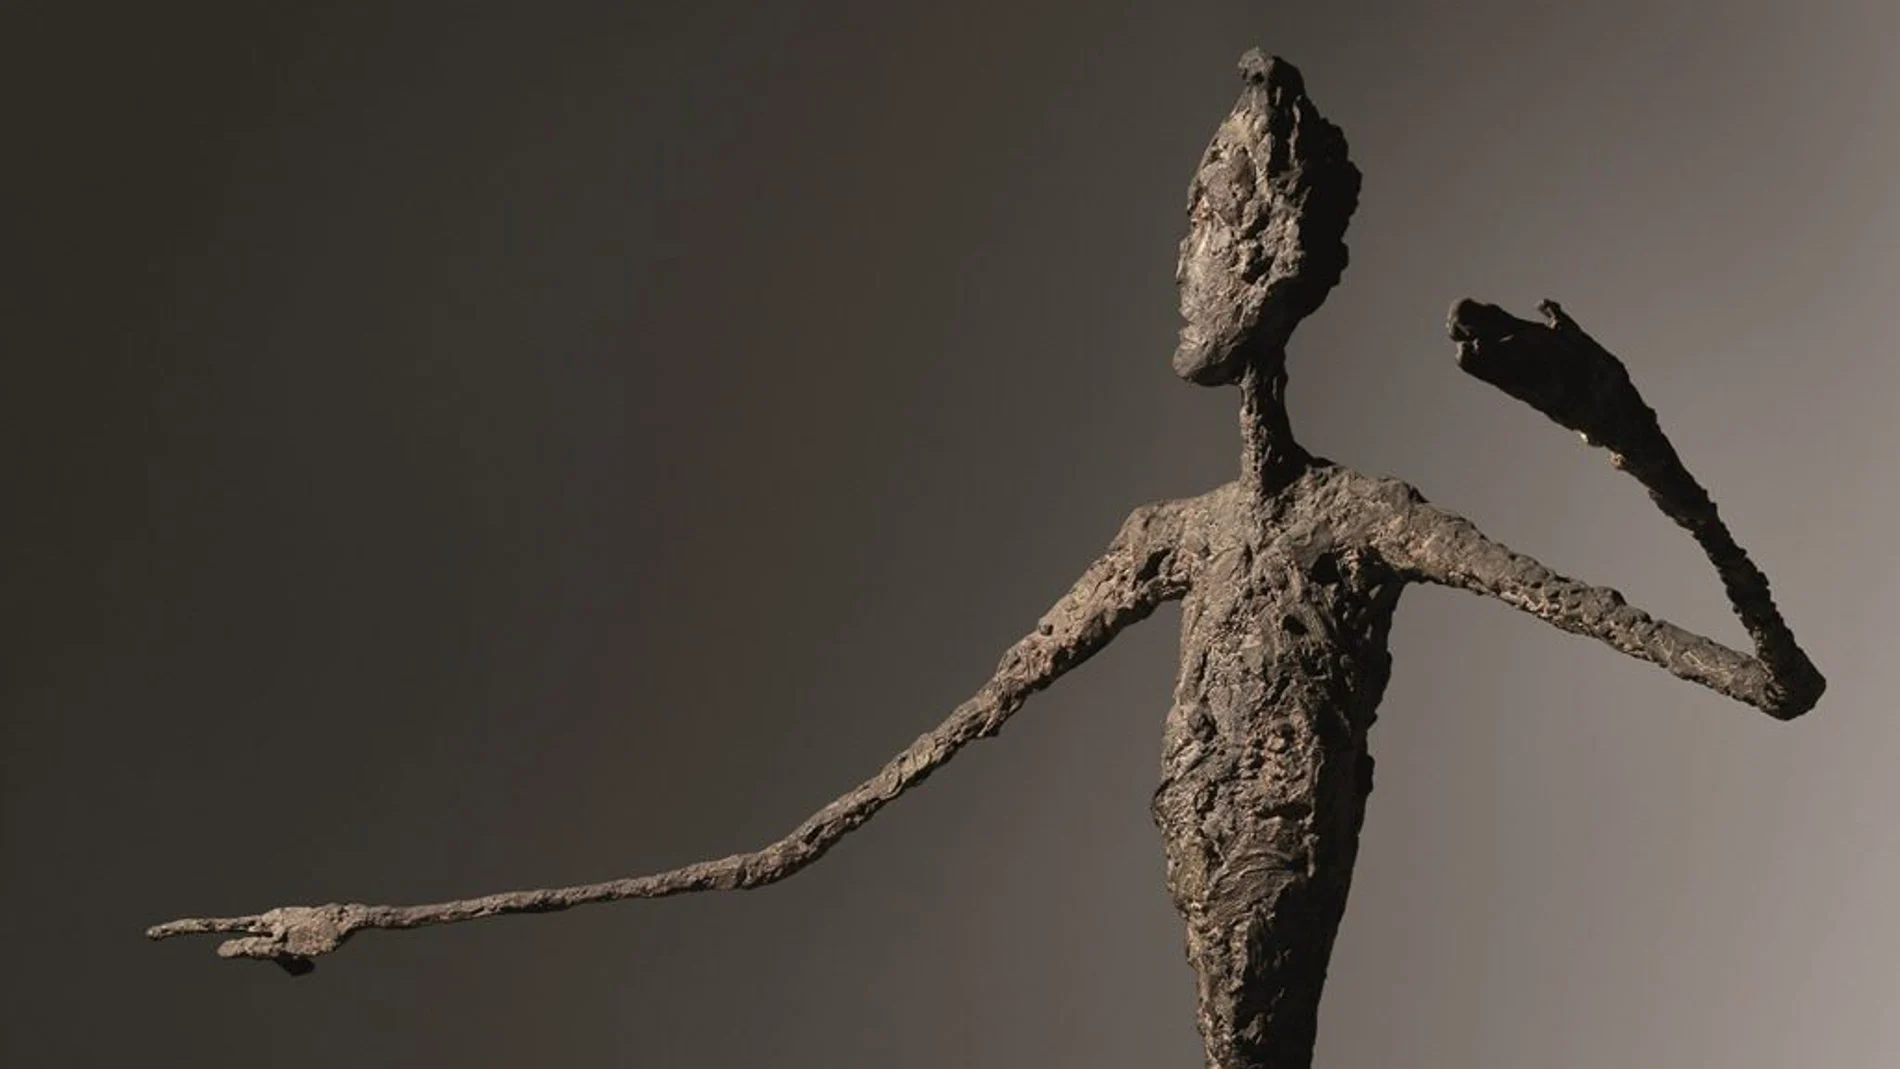 Fotografía cedida hoy, domingo 3 de mayo de 2015, de la obra "L'homme au doigt", escultura en bronce de Alberto Giacometti.